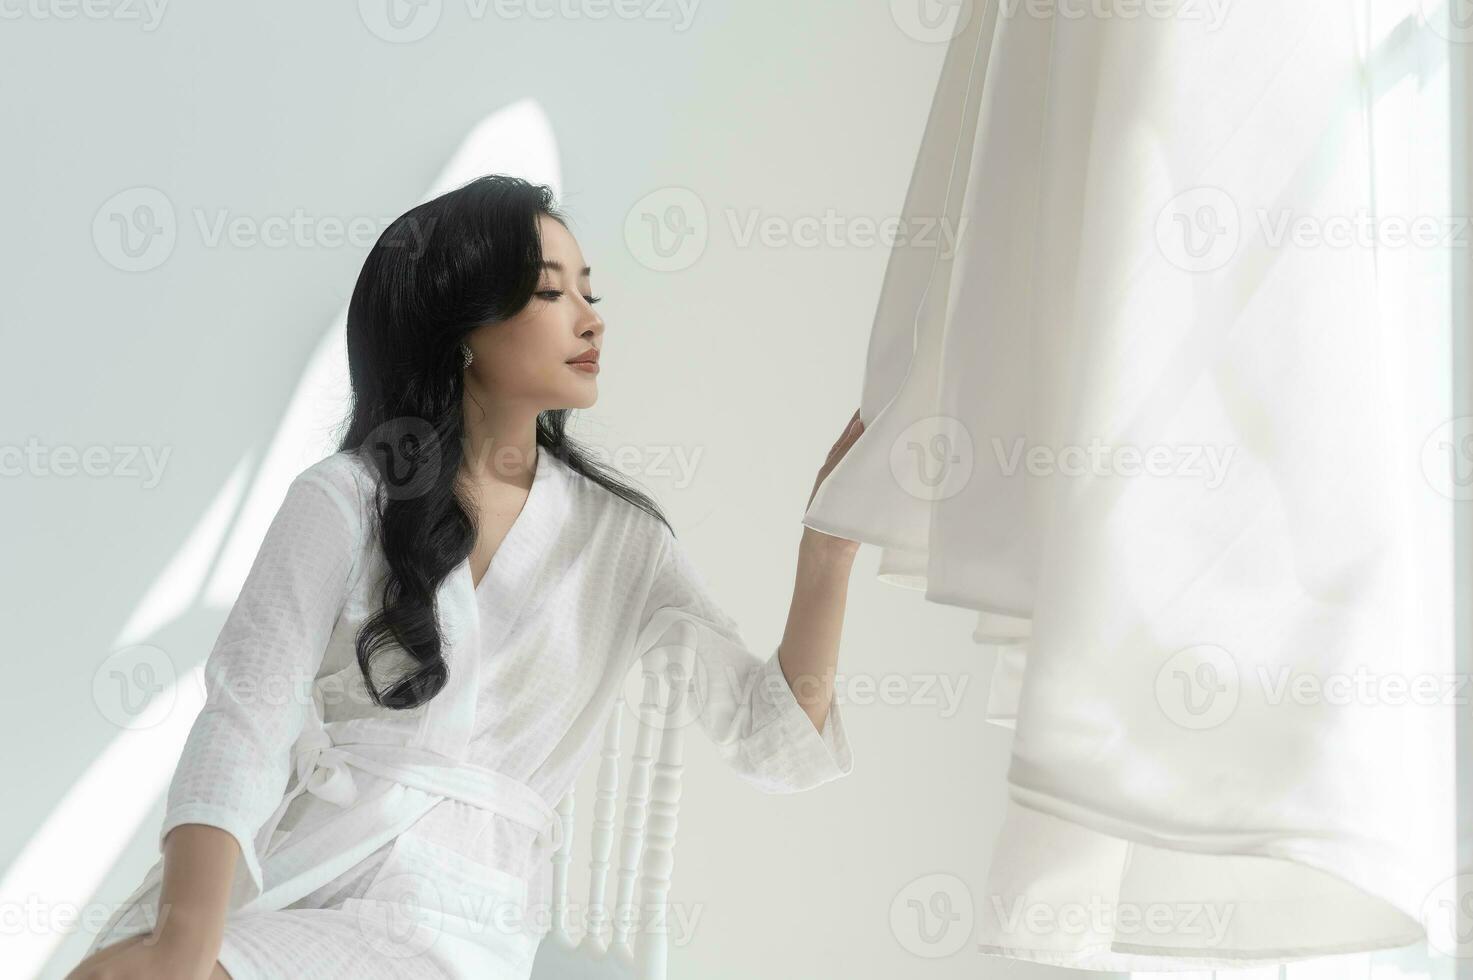 novia en blanco albornoz conmovedor y admirativo elegante Boda vestir preparando para Boda día, amor y matrimonio concepto foto